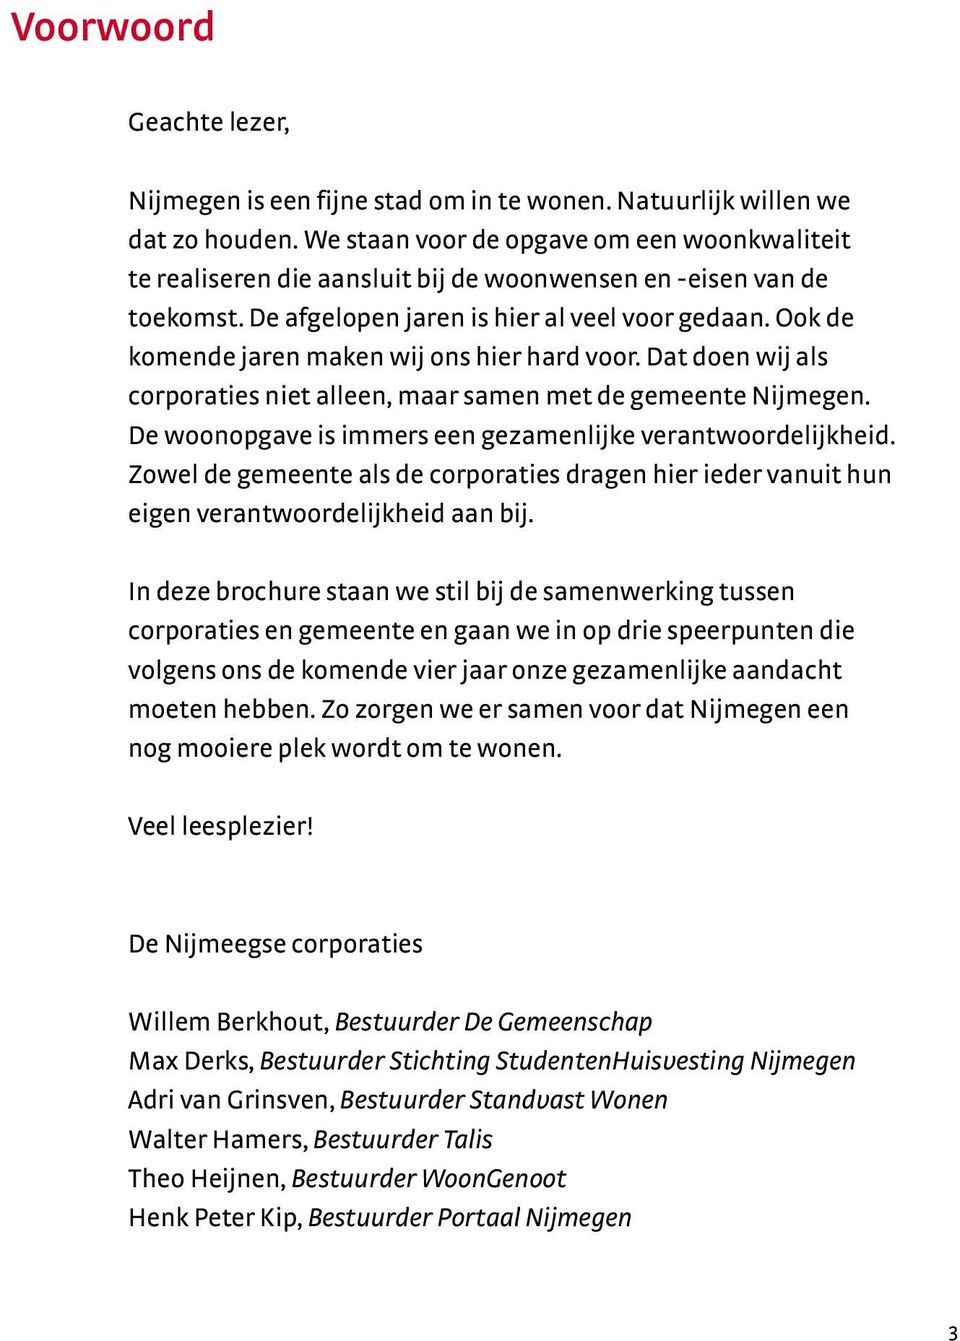 Ook de komende jaren maken wij ons hier hard voor. Dat doen wij als corporaties niet alleen, maar samen met de gemeente Nijmegen. De woonopgave is immers een gezamenlijke verantwoordelijkheid.